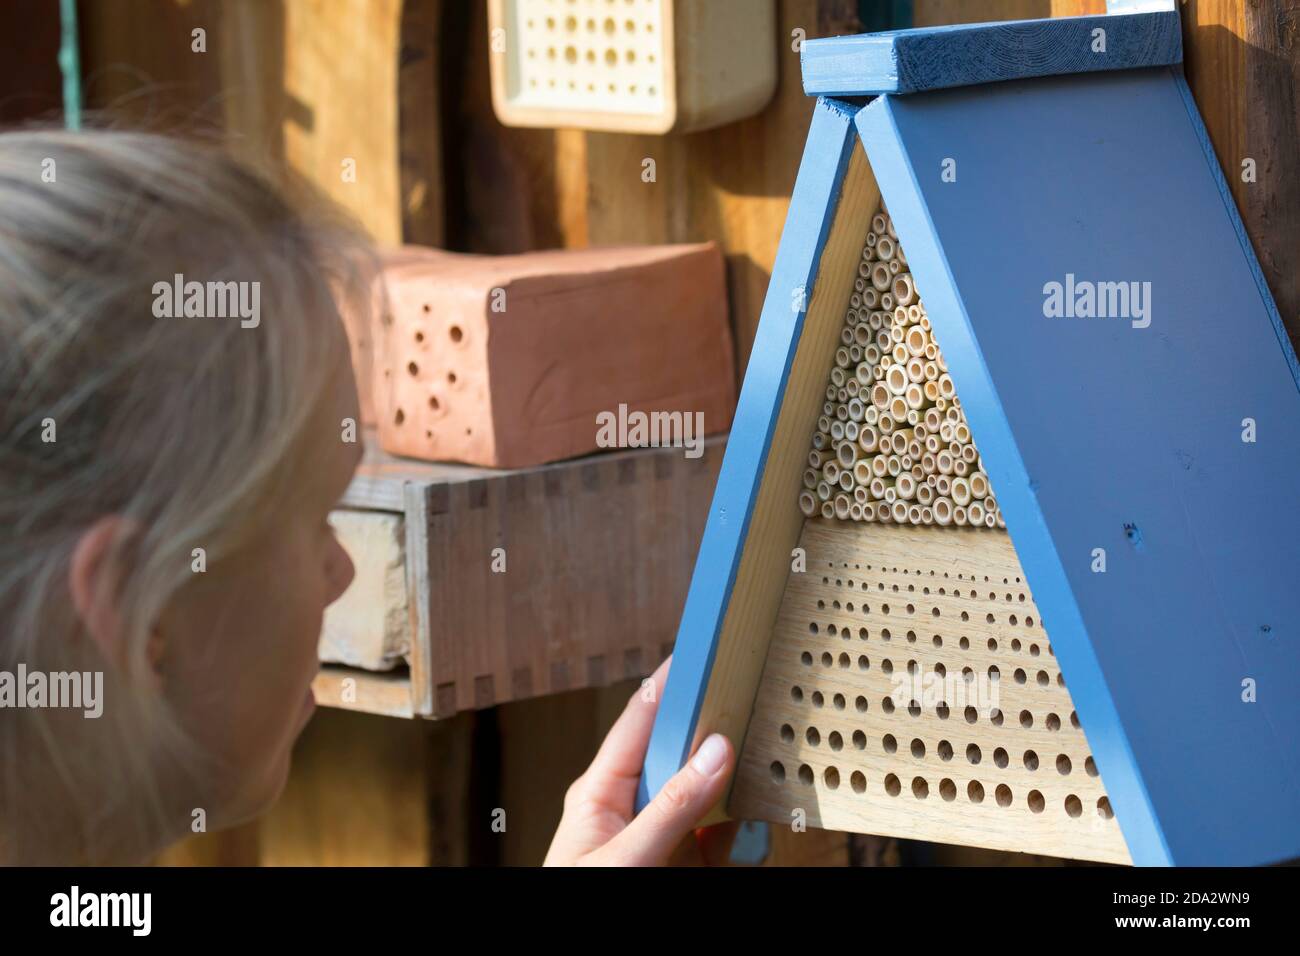 Mujer joven observando abejas silvestres en ayudas de anidación, Alemania Foto de stock